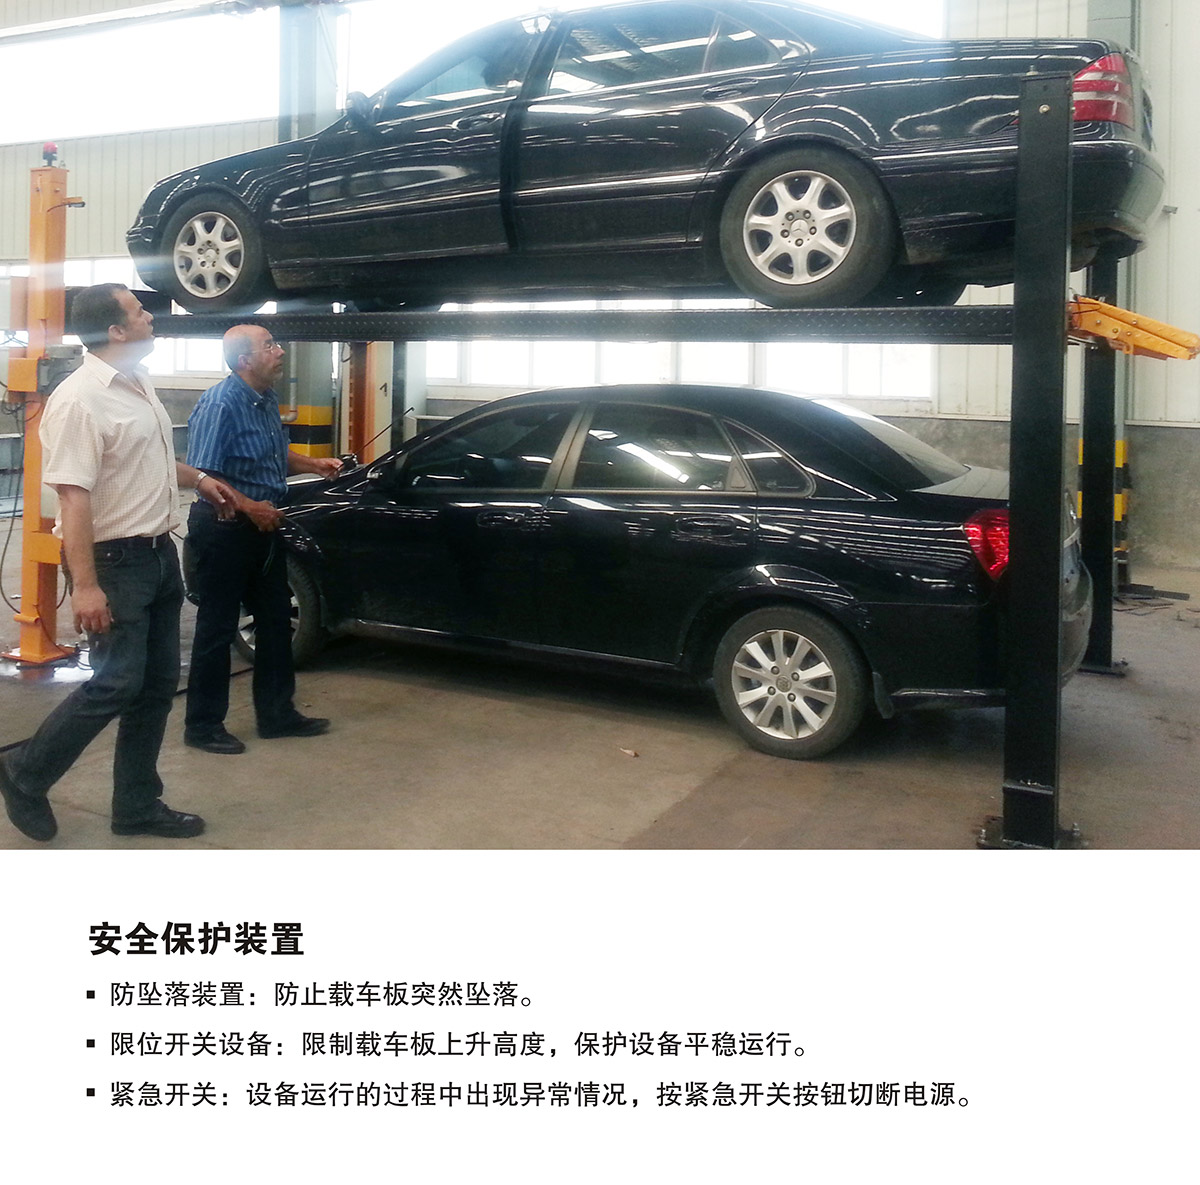 重庆PJS四柱简易升降立体停车设备安全保护装置.jpg